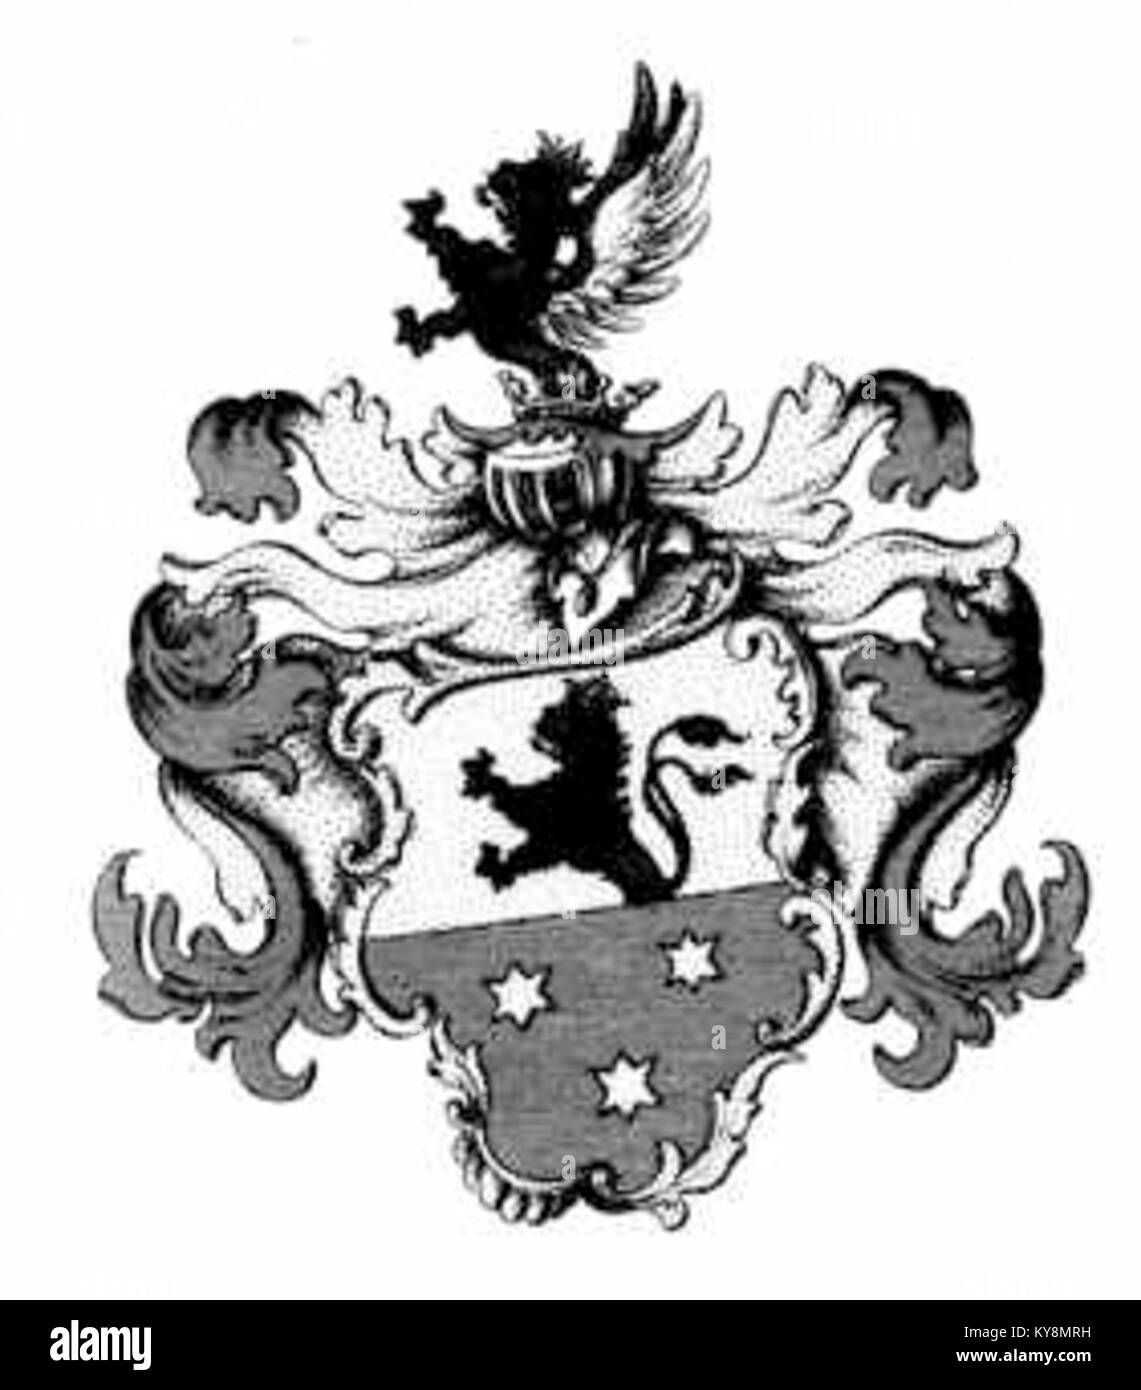 Wappen der Grafen zu Eulenburg (18. Jh.) Foto Stock